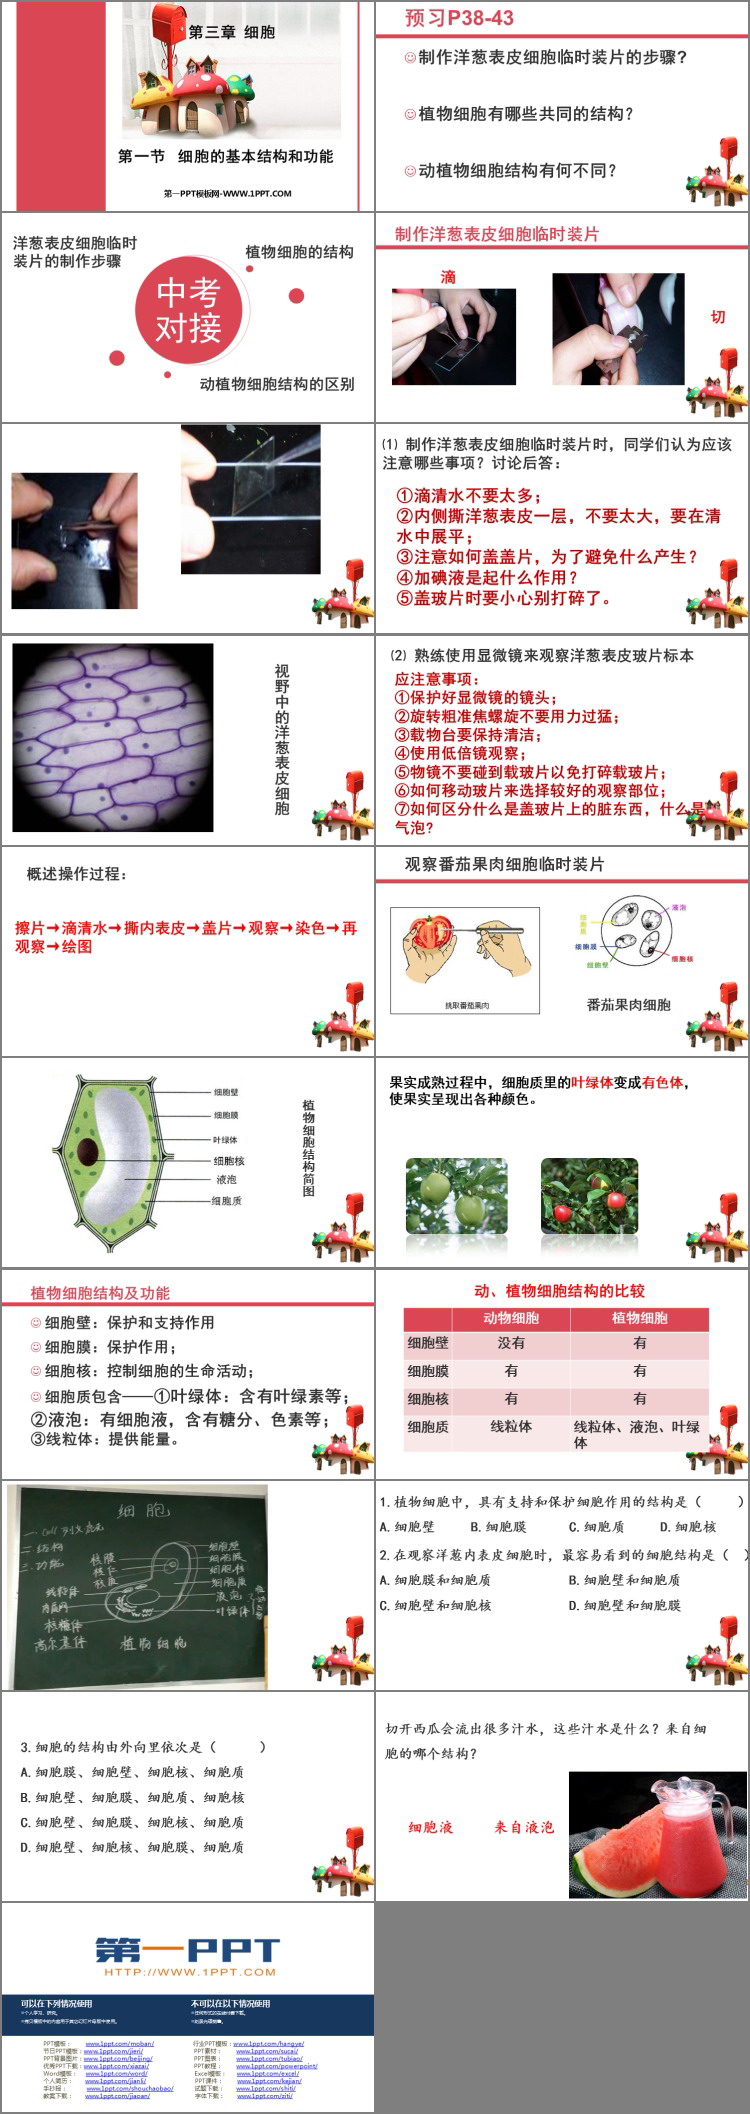 《细胞的基本结构和功能》PPT教学课件-预览图02